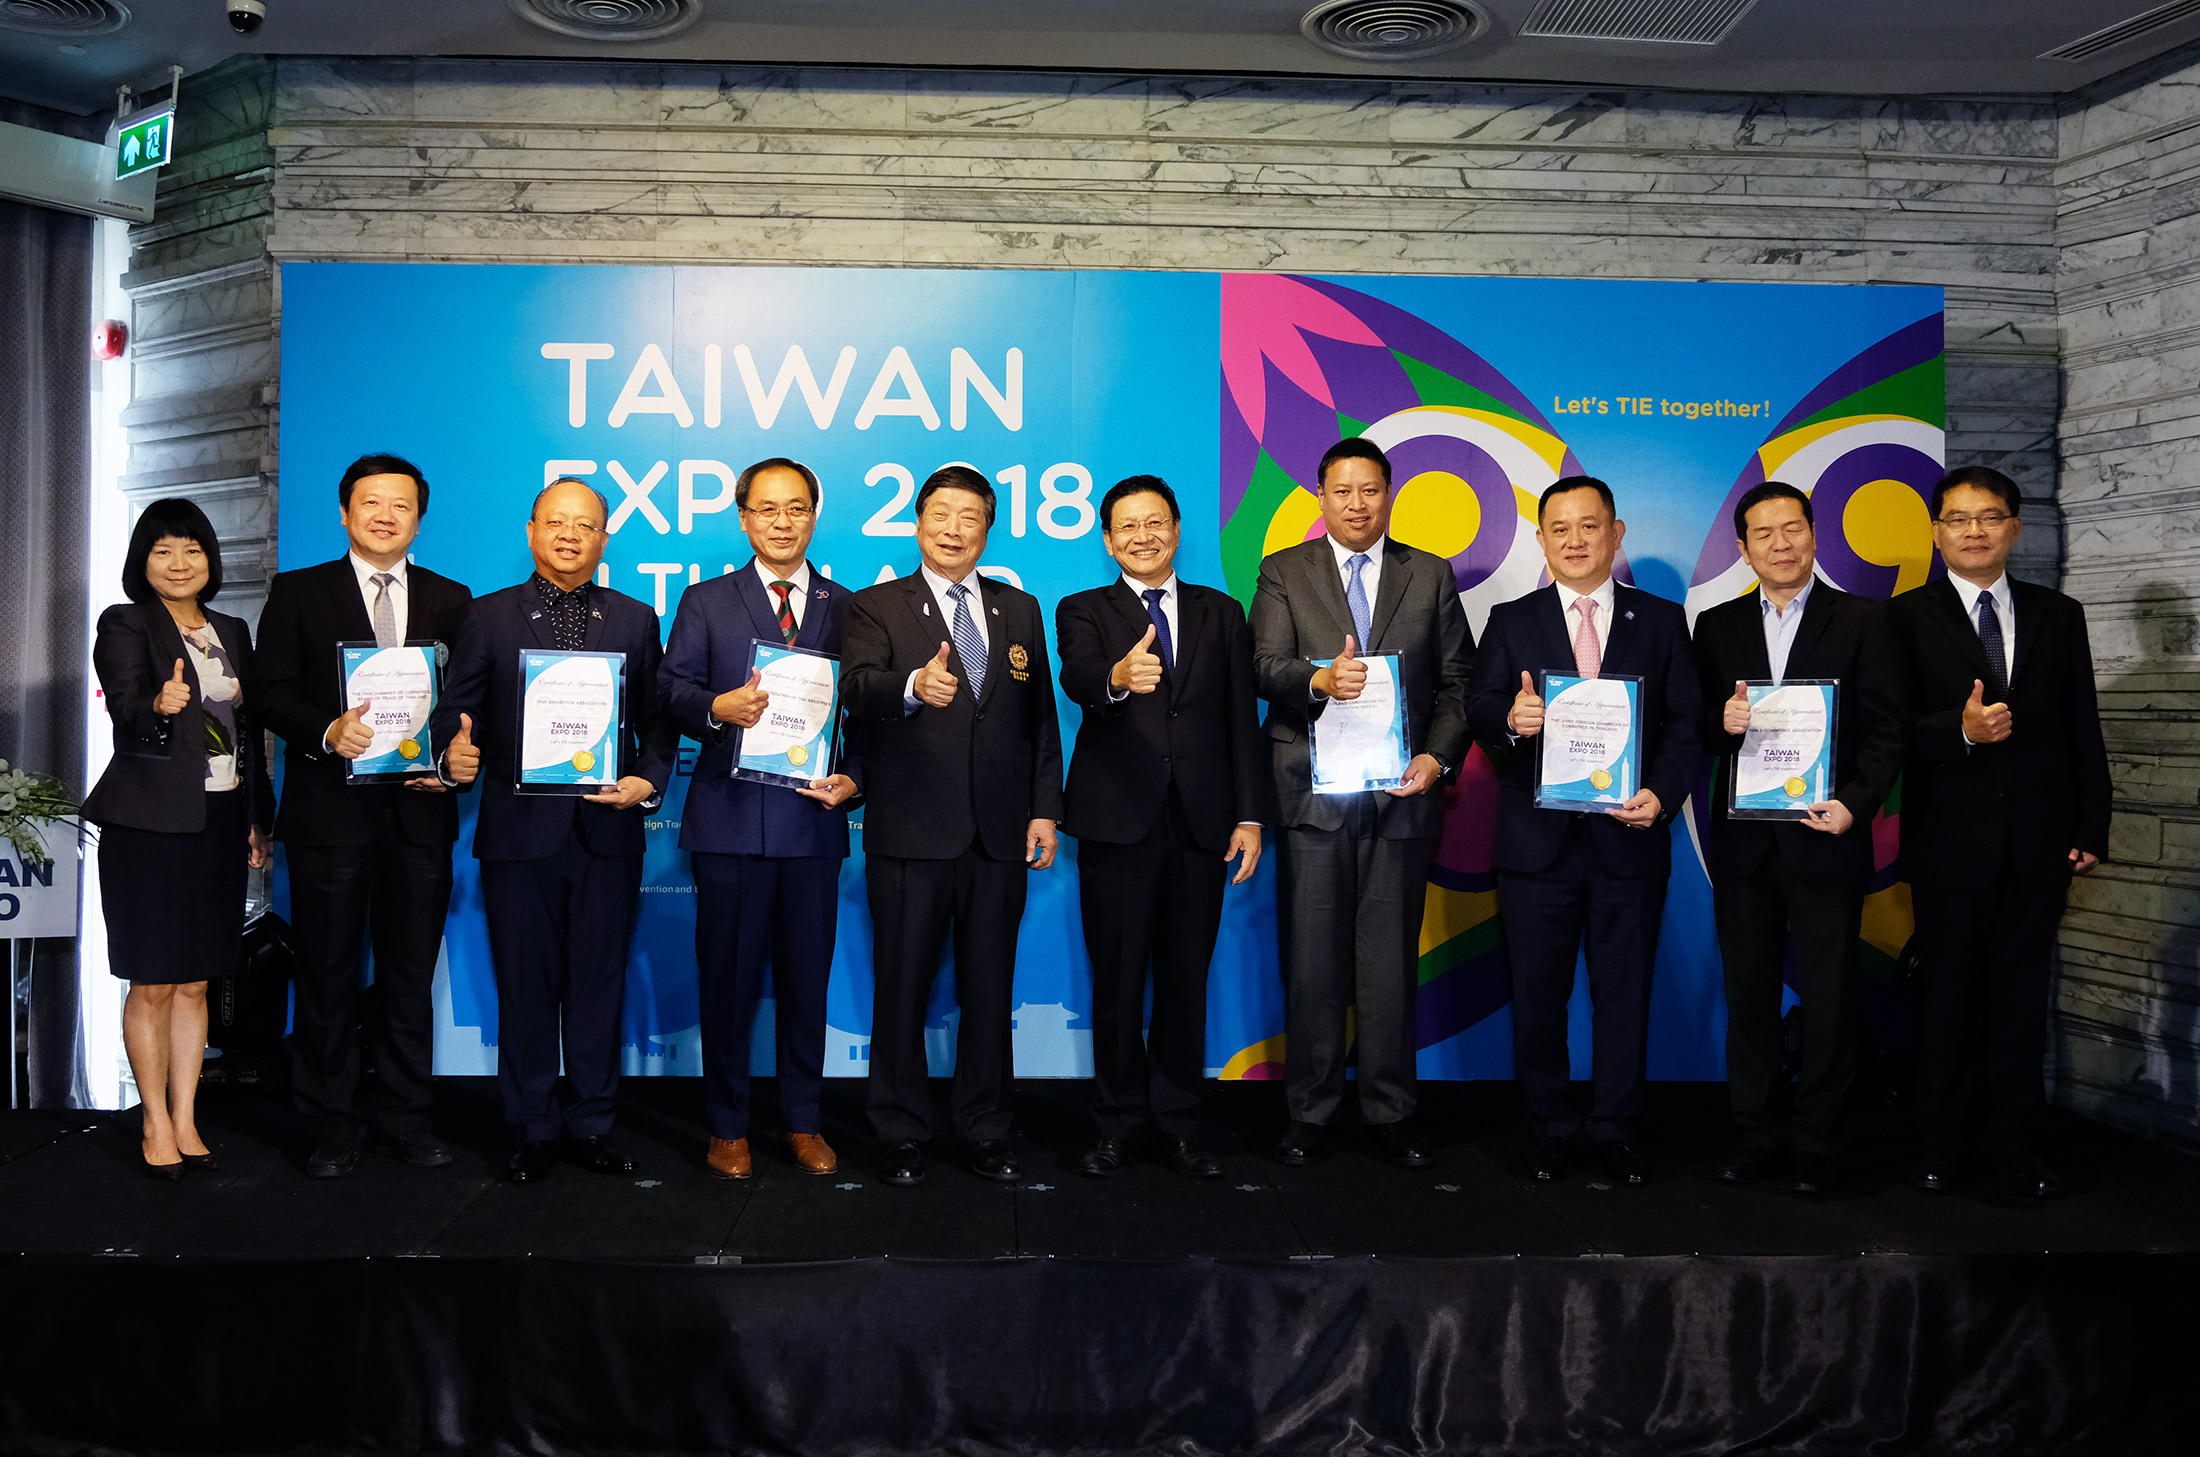 กทม.  ///  เตรียมตัวให้พร้อมกับ Taiwan Expo 2018 ครั้งแรกในเมืองไทย 30 สิงหาคมนี้ที่ไบเทค บางนา